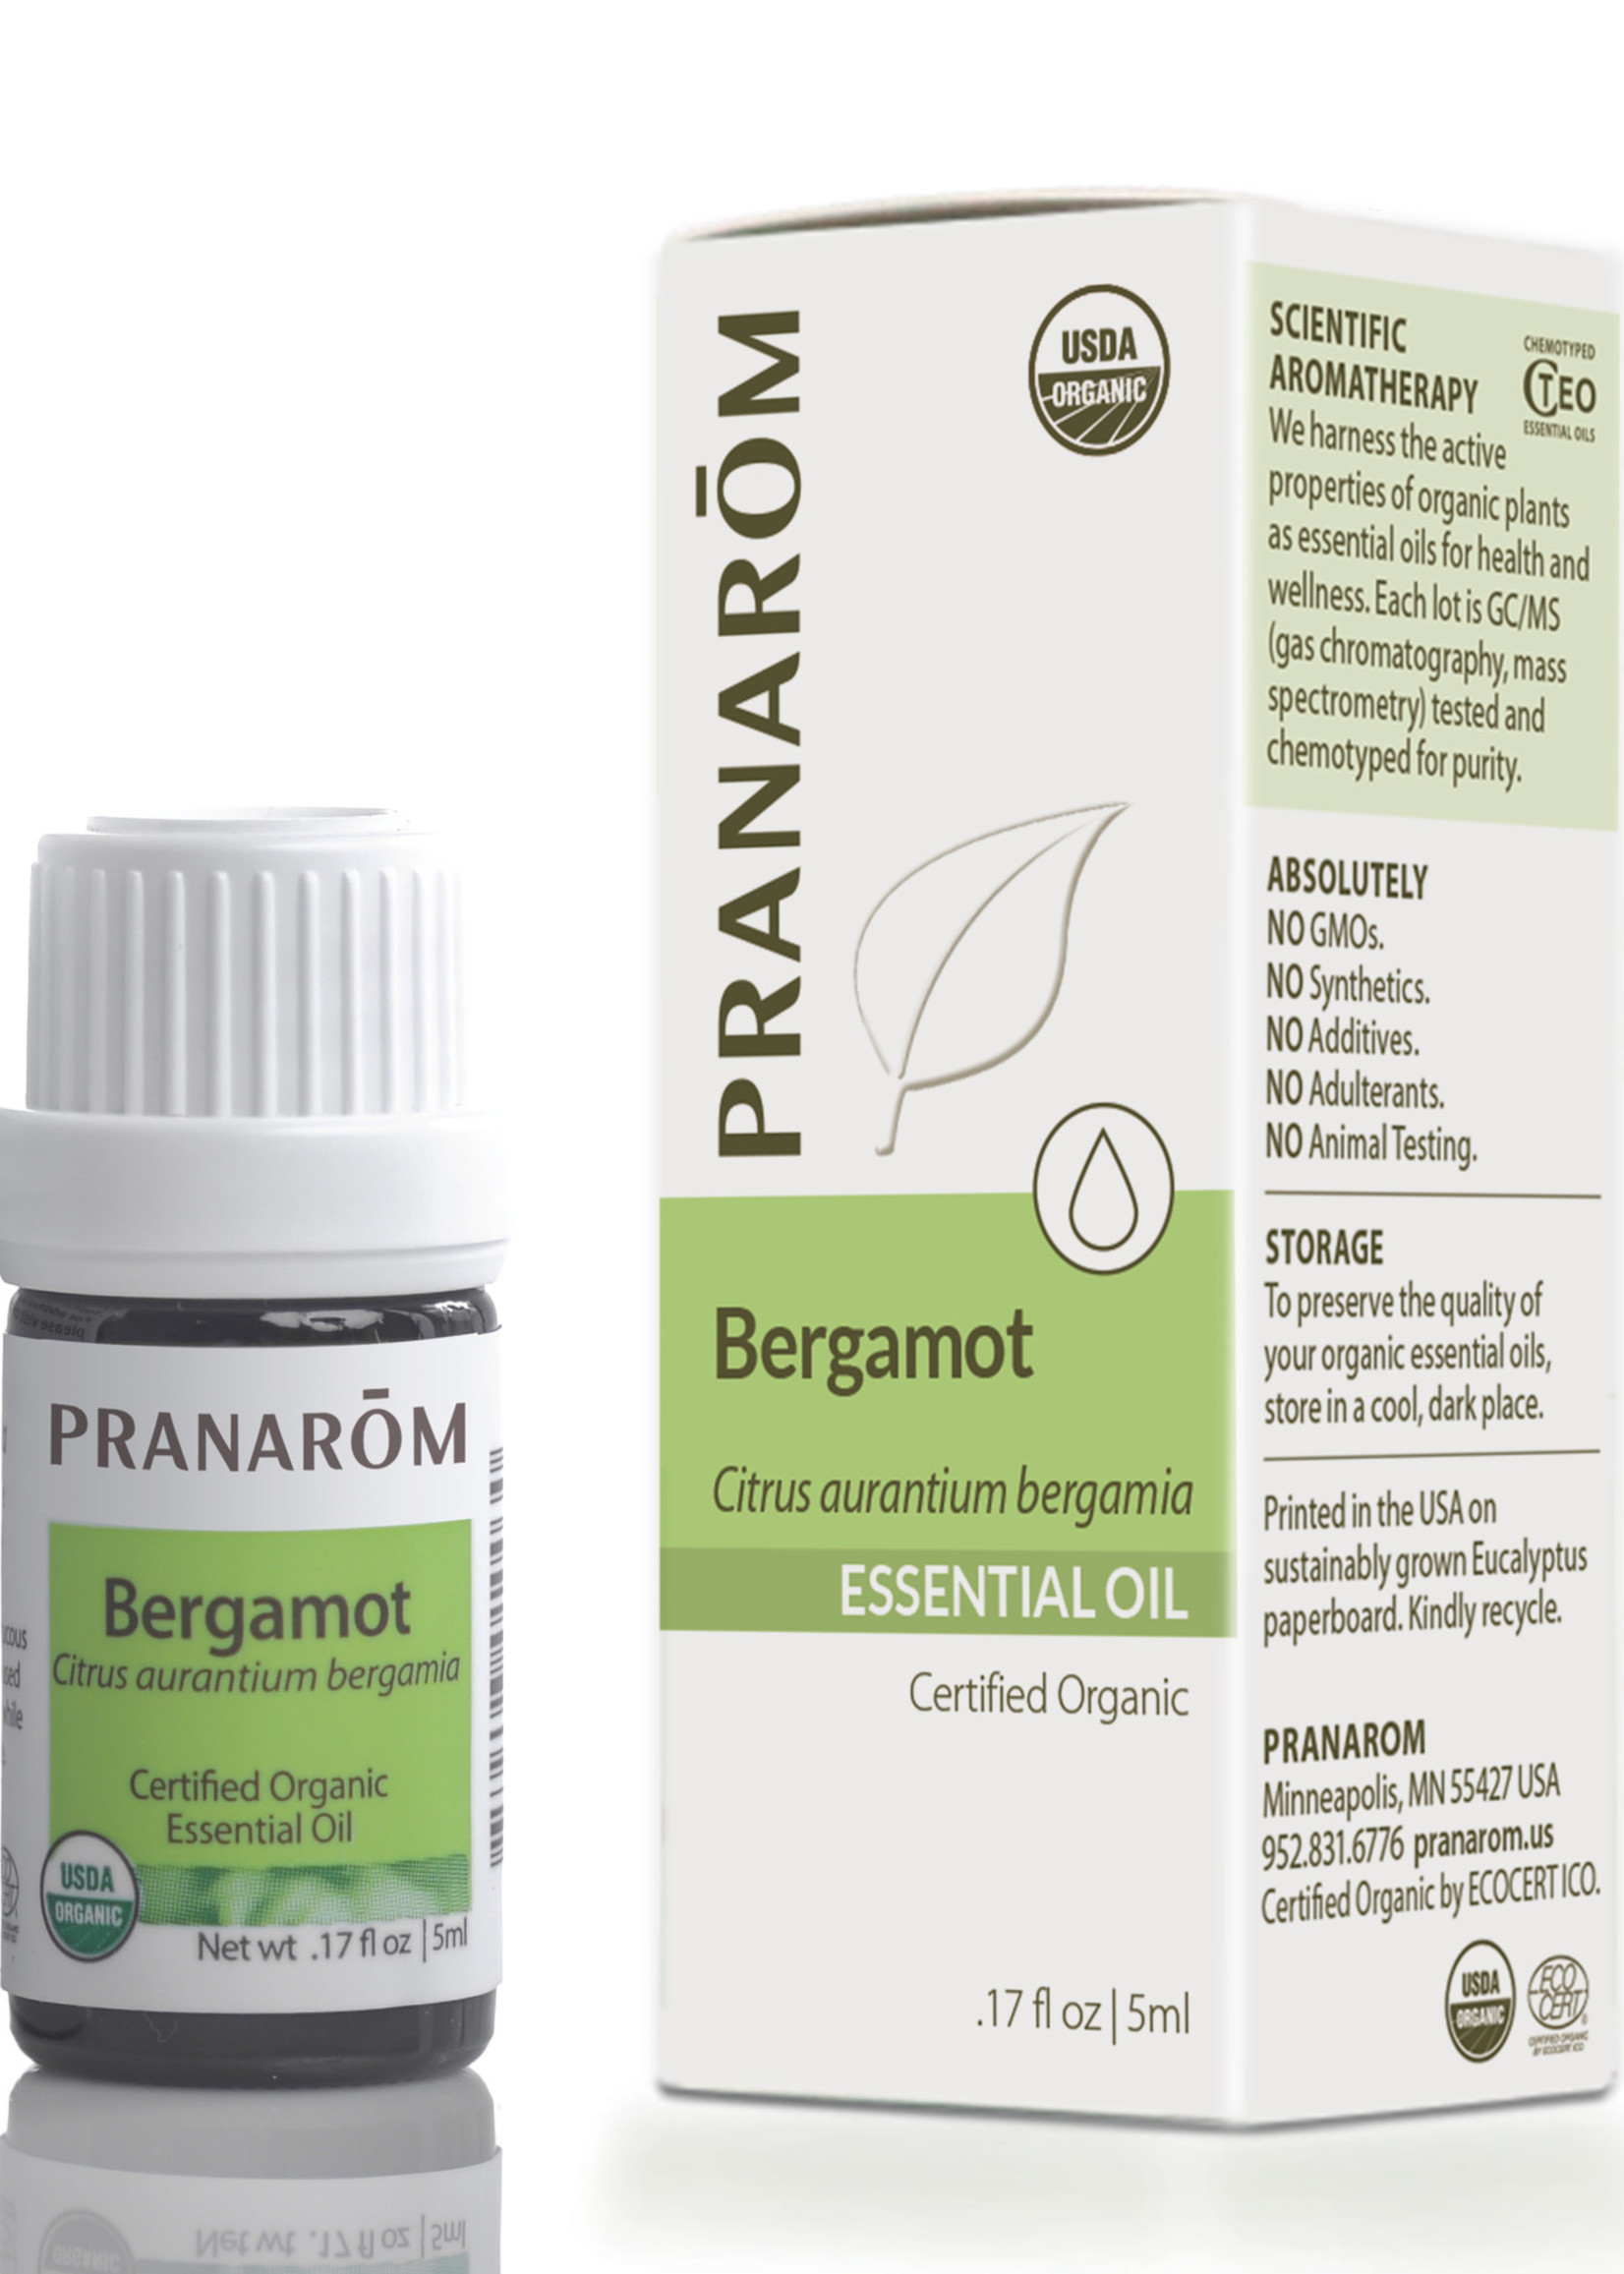 Pranoram Bergamot 5ml (Citrus aurantium bergamia)